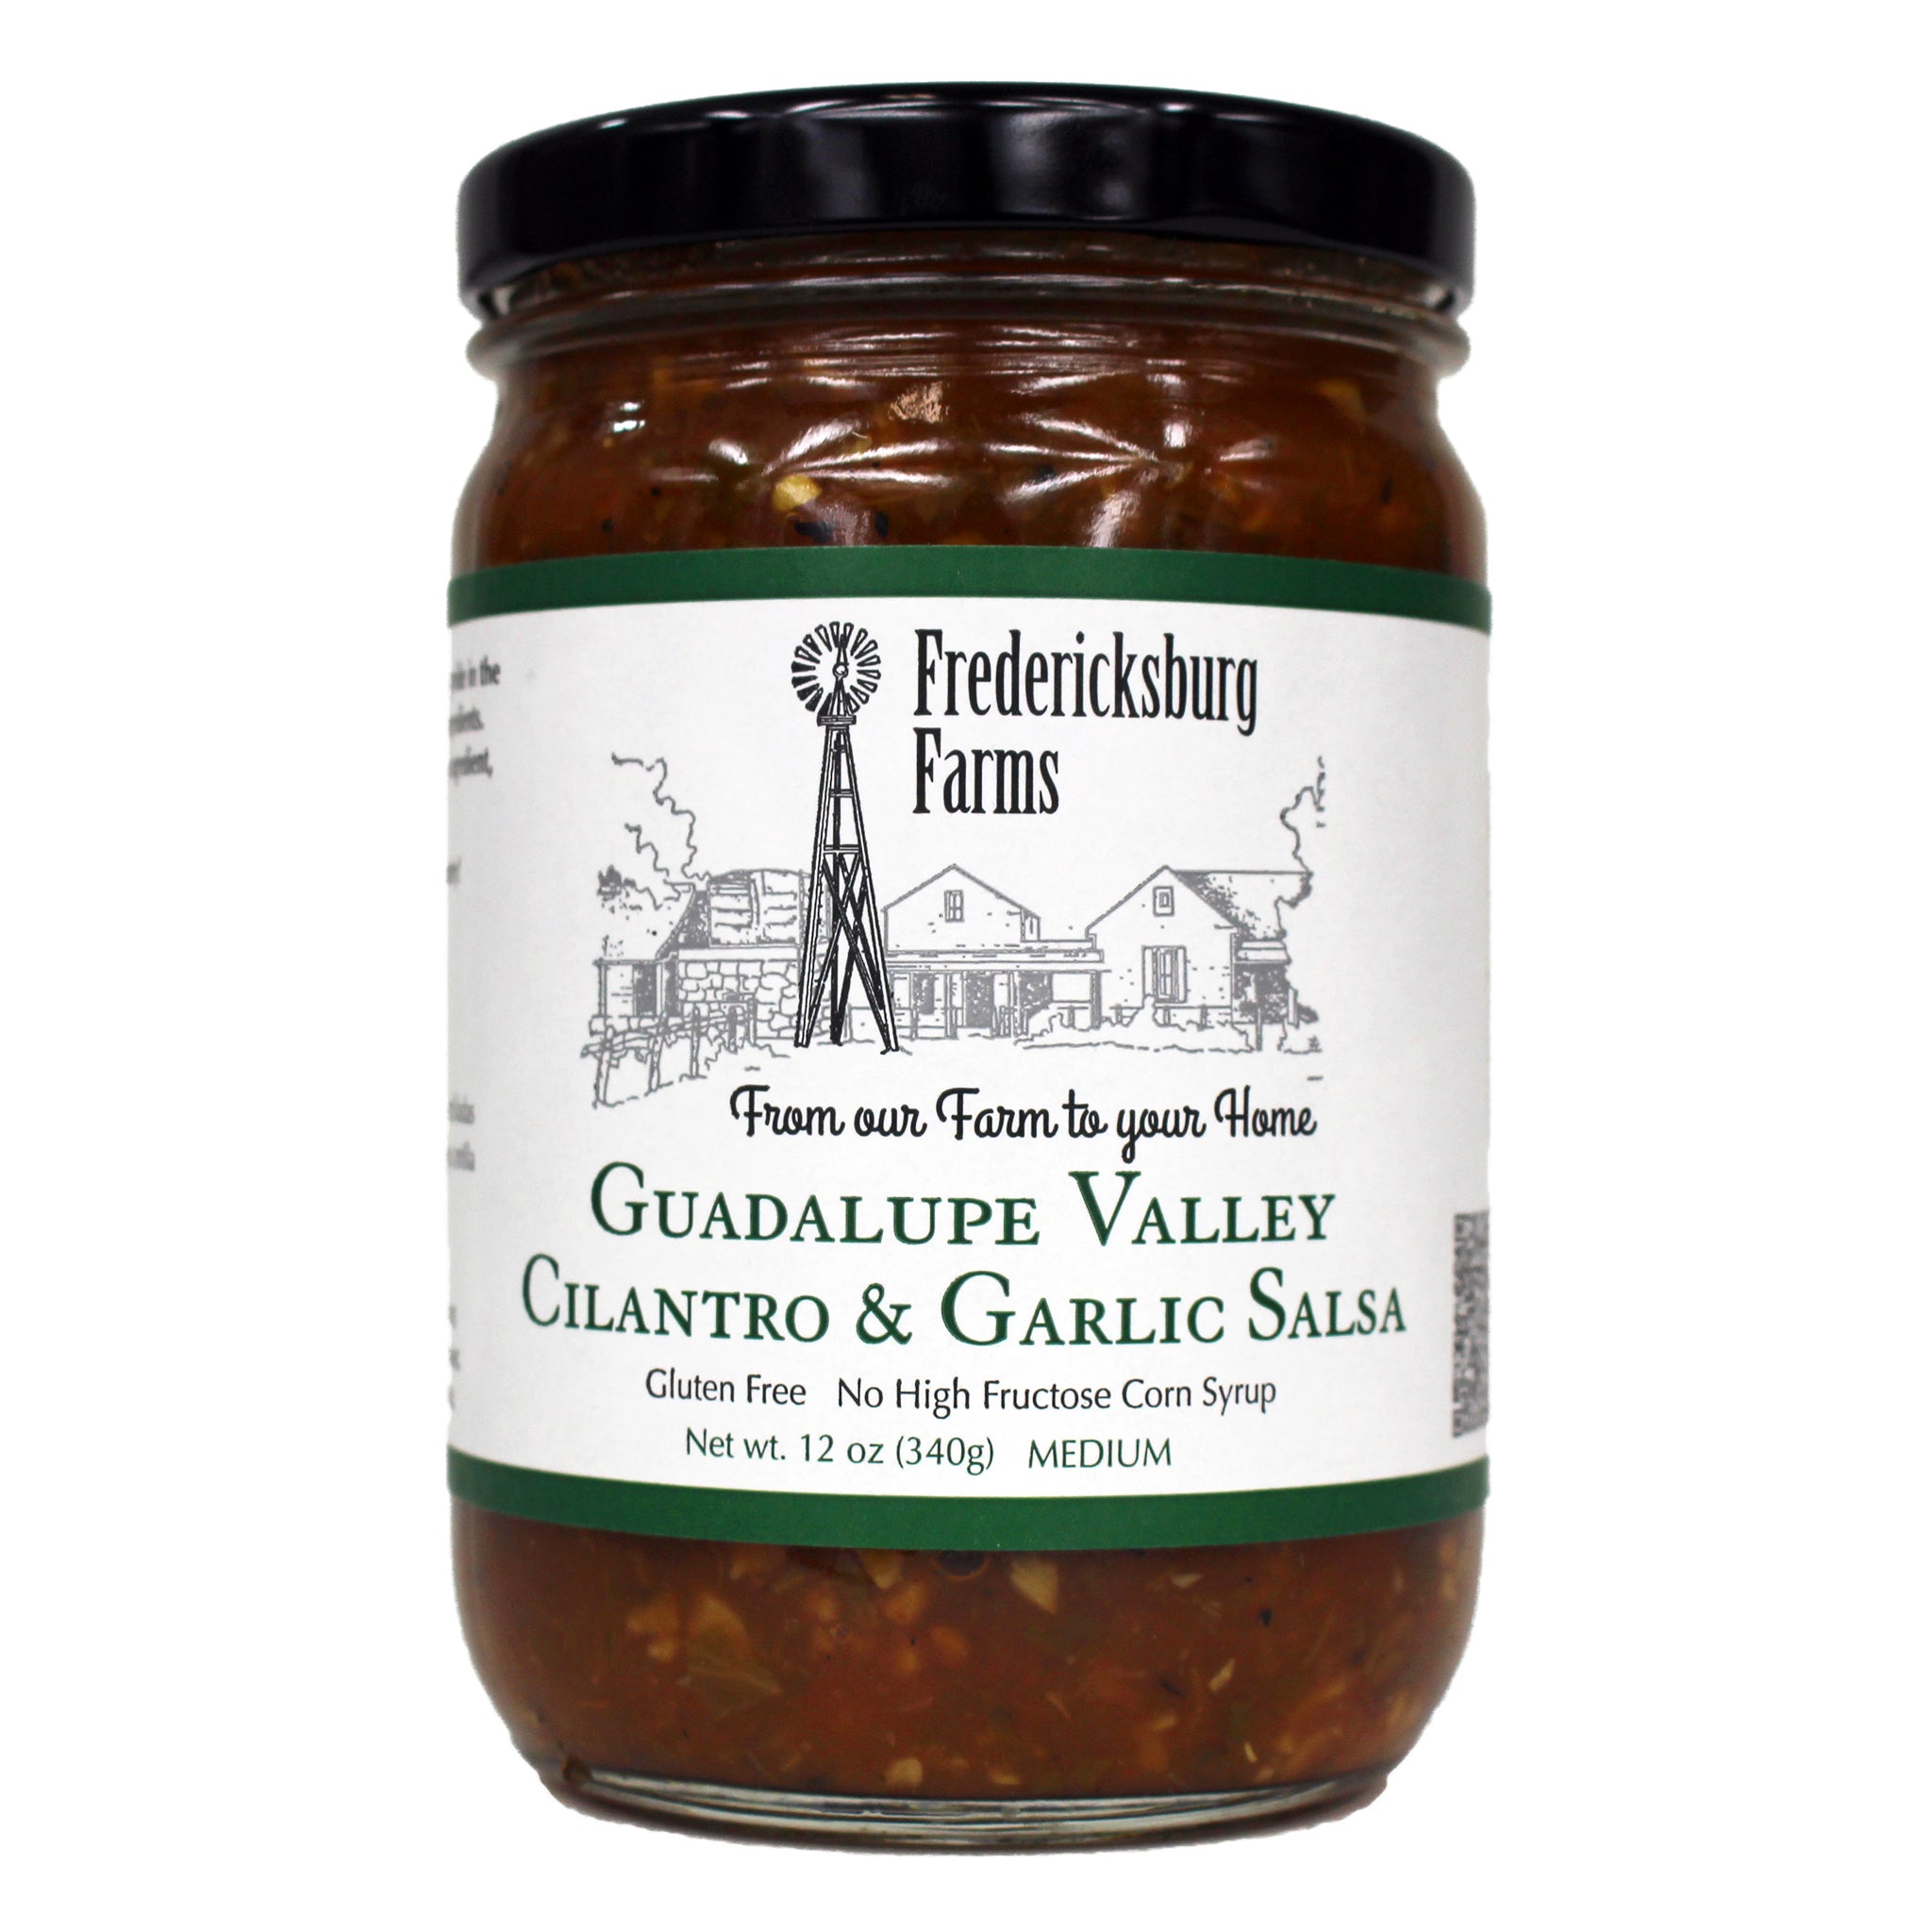 Guadalupe Valley Cilantro & Garlic Salsa - Fredericksburg Farms